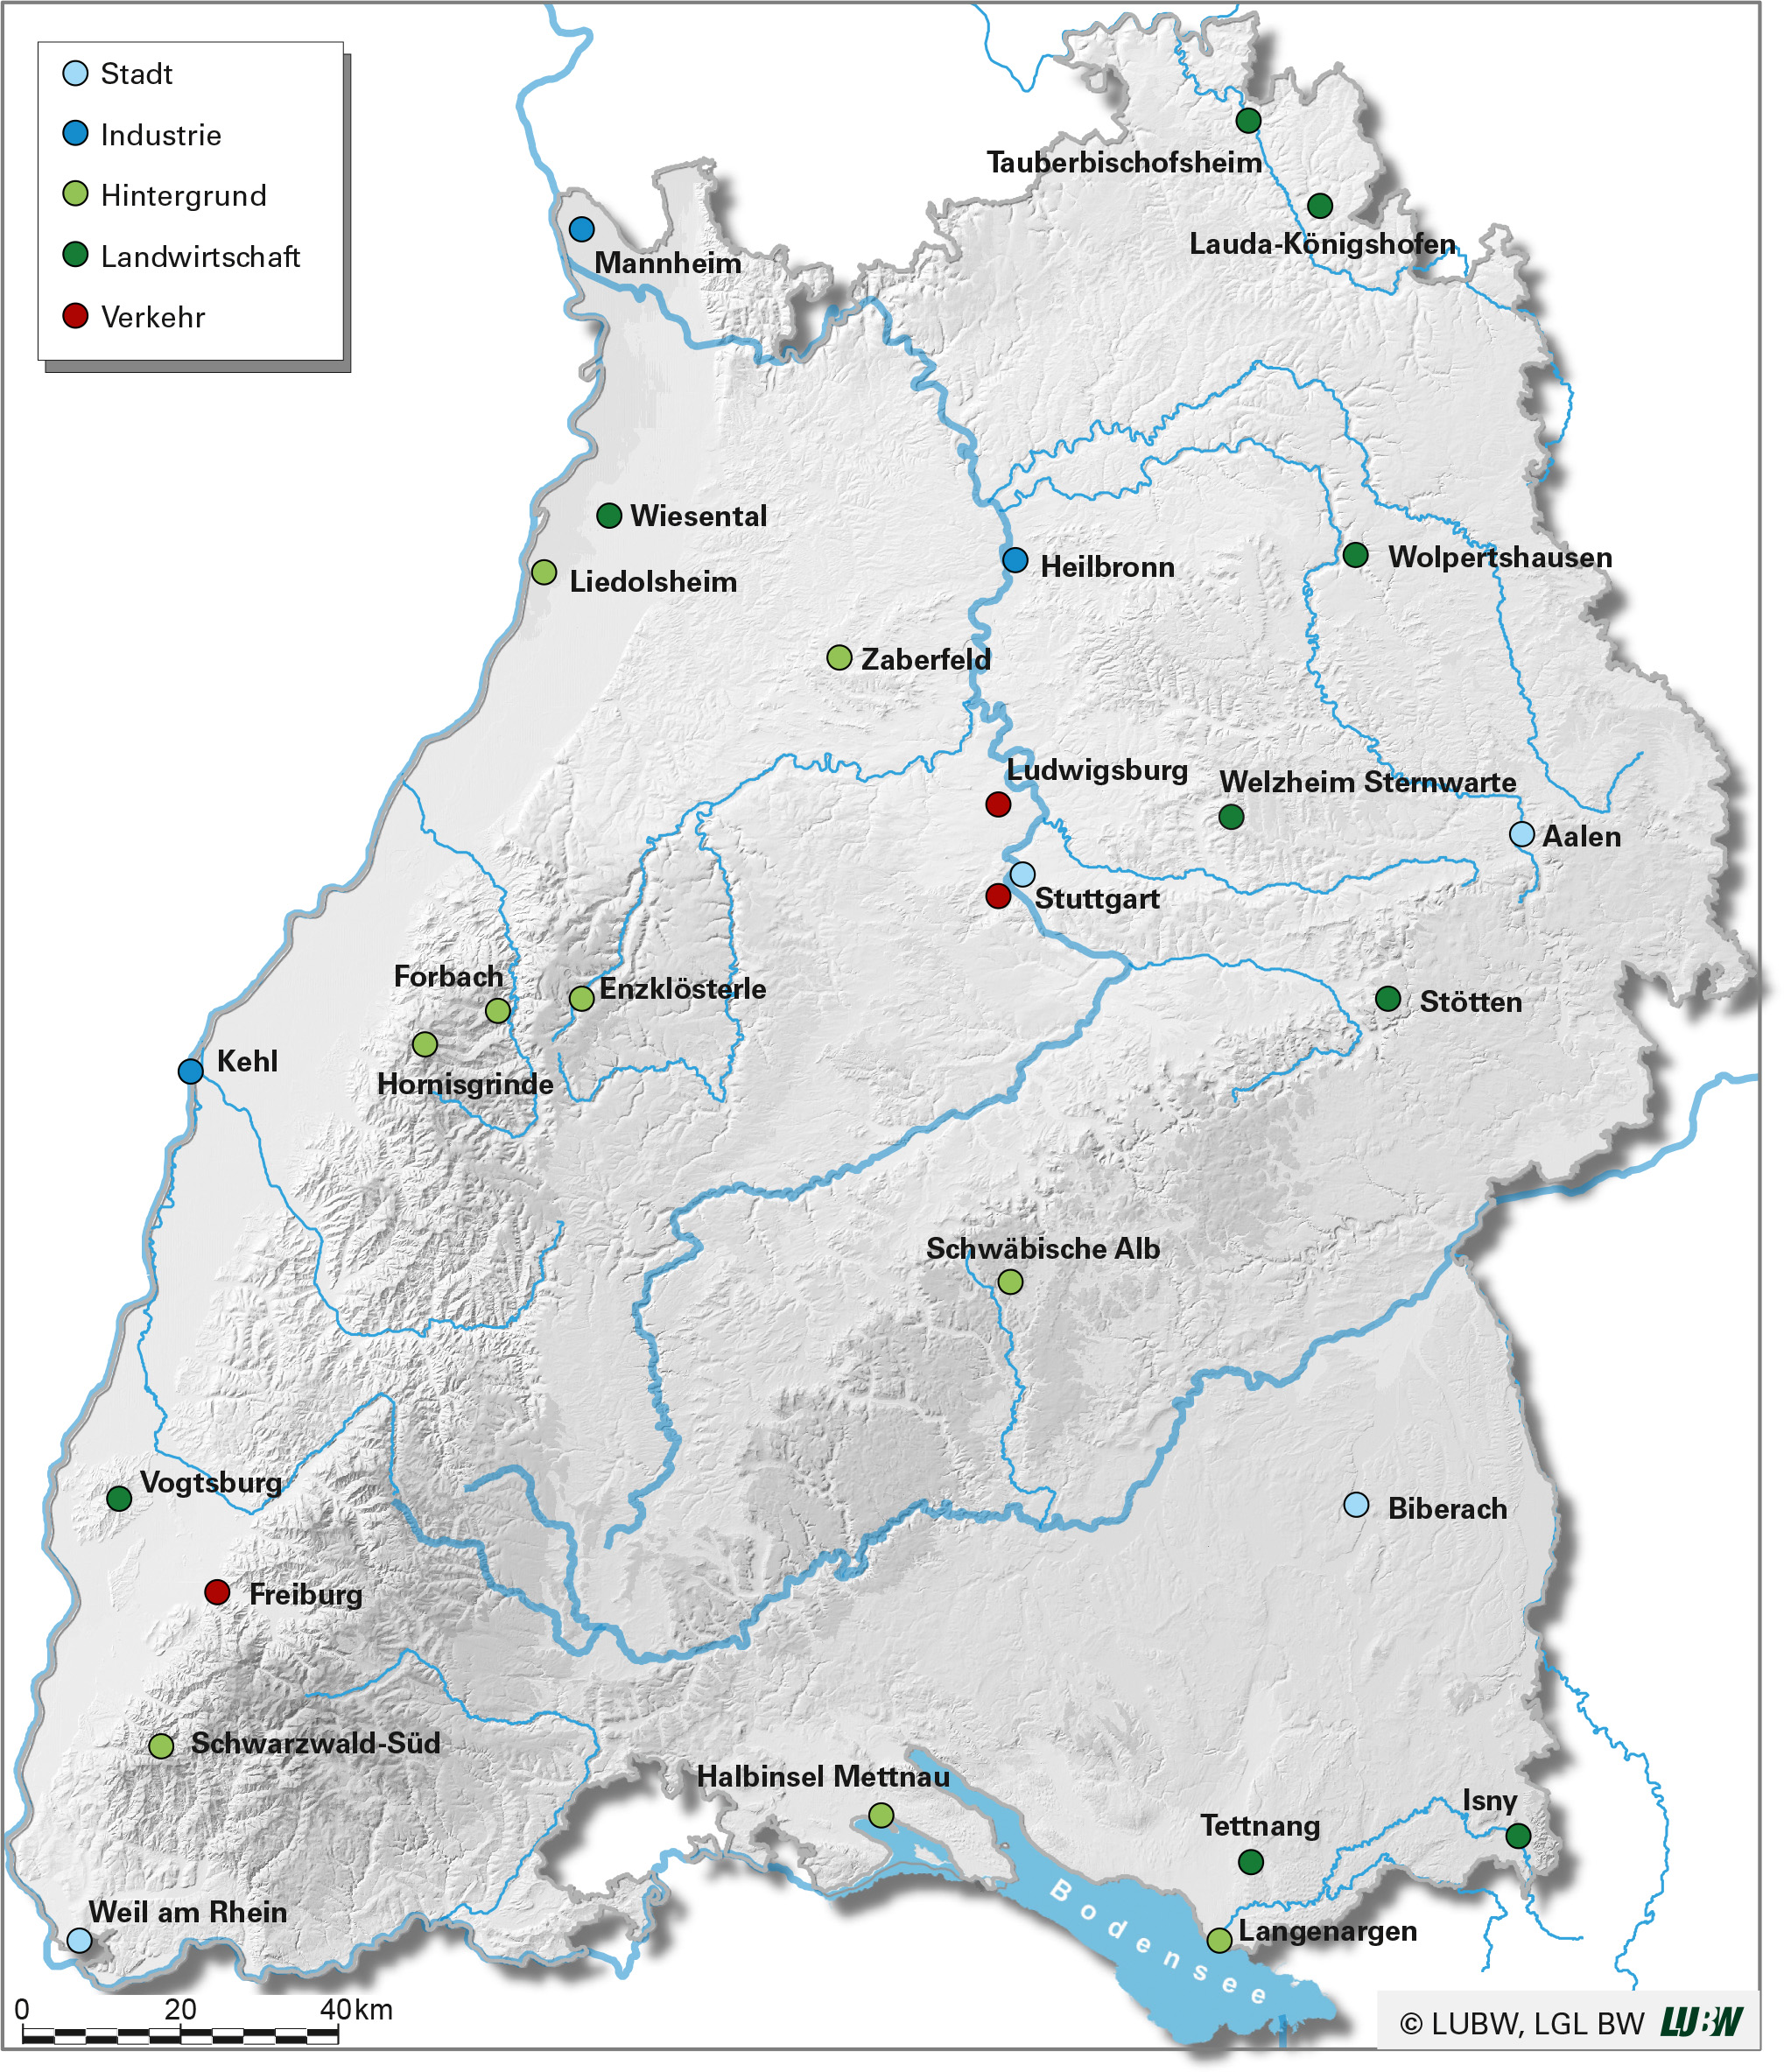 Topographische Karte von Baden-Württemberg. Die Ammoniakmessstellen im Jahr 2021 sind abhängig von ihrer Umgebung in die Kategorien Stadt, Industrie, Hintergrund, Landwirtschaft und Verkehr eingeteilt und unterschiedlich farblich markiert.